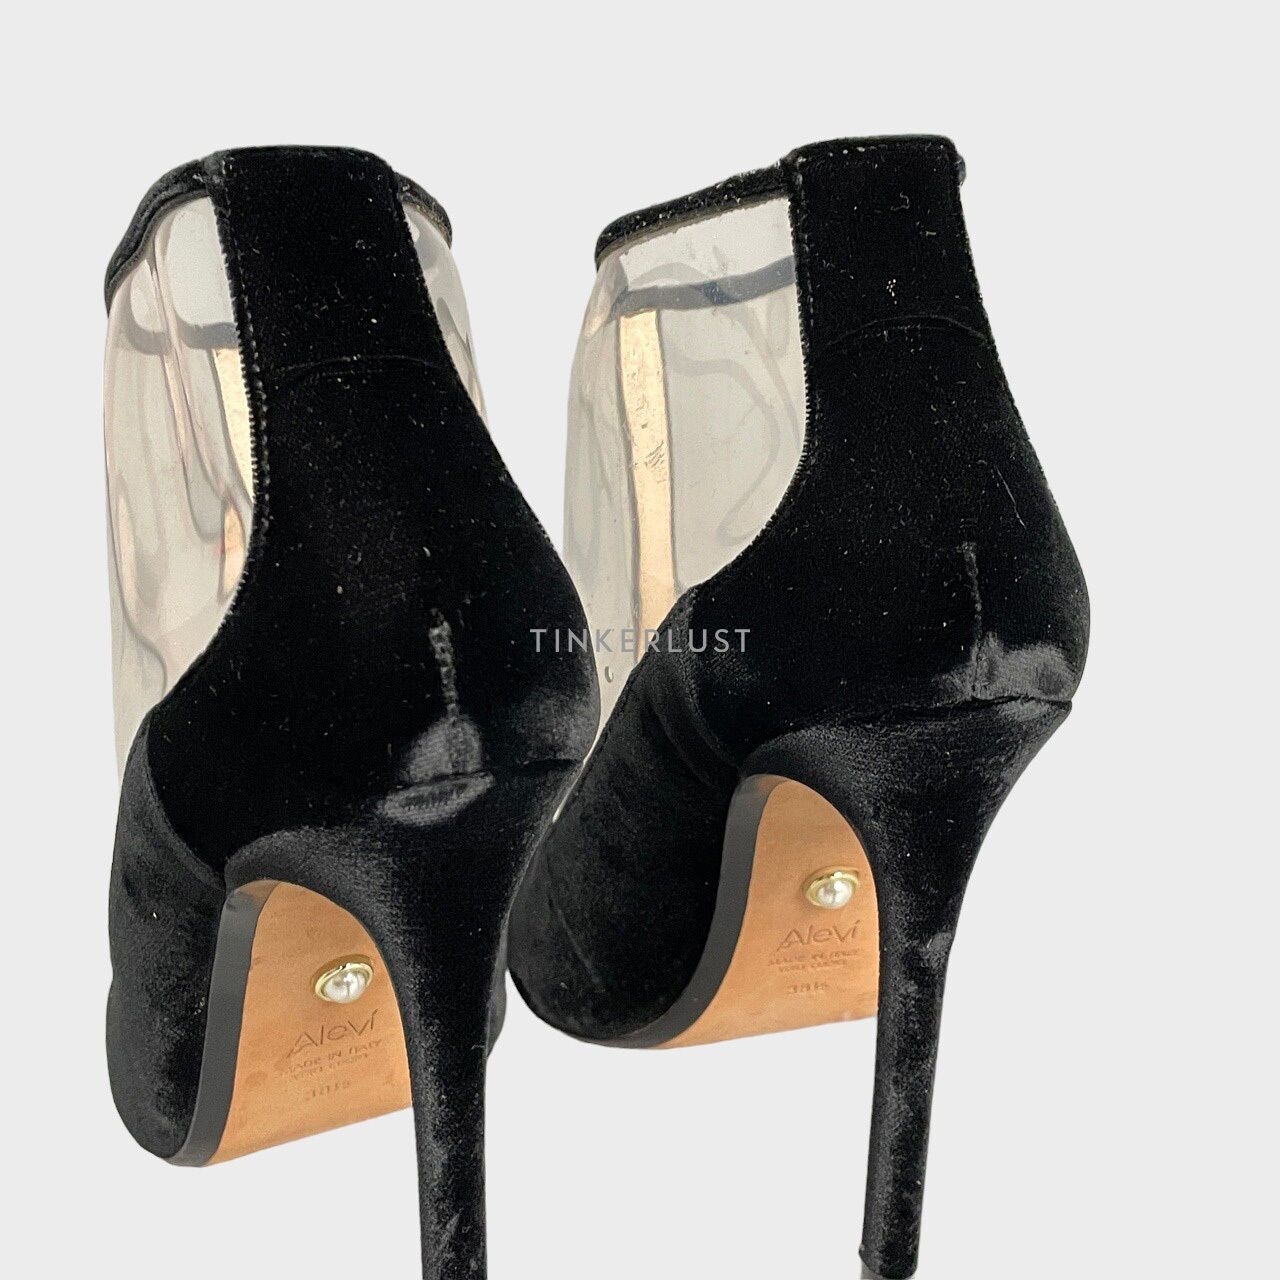 Alevi Milano Black Heels